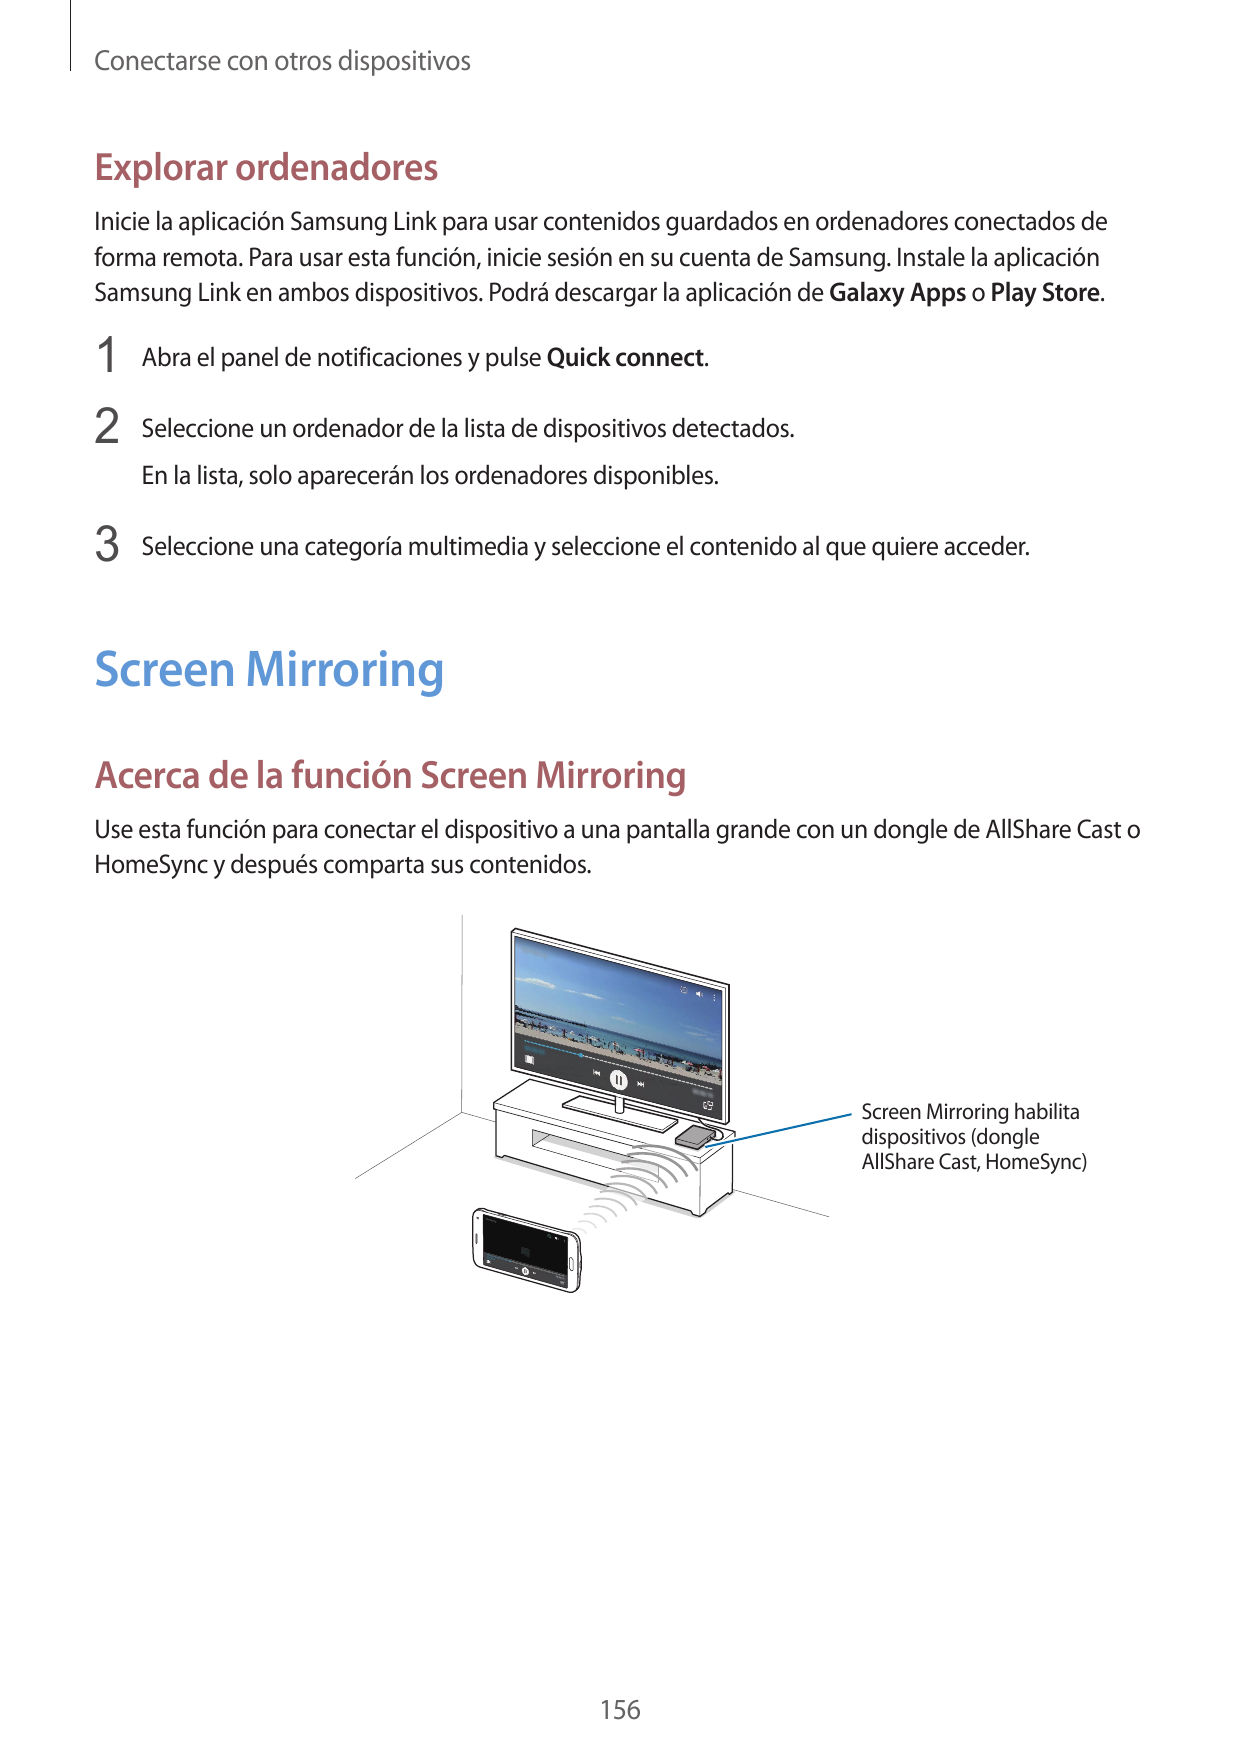 Conectarse con otros dispositivosExplorar ordenadoresInicie la aplicación Samsung Link para usar contenidos guardados en ordenad